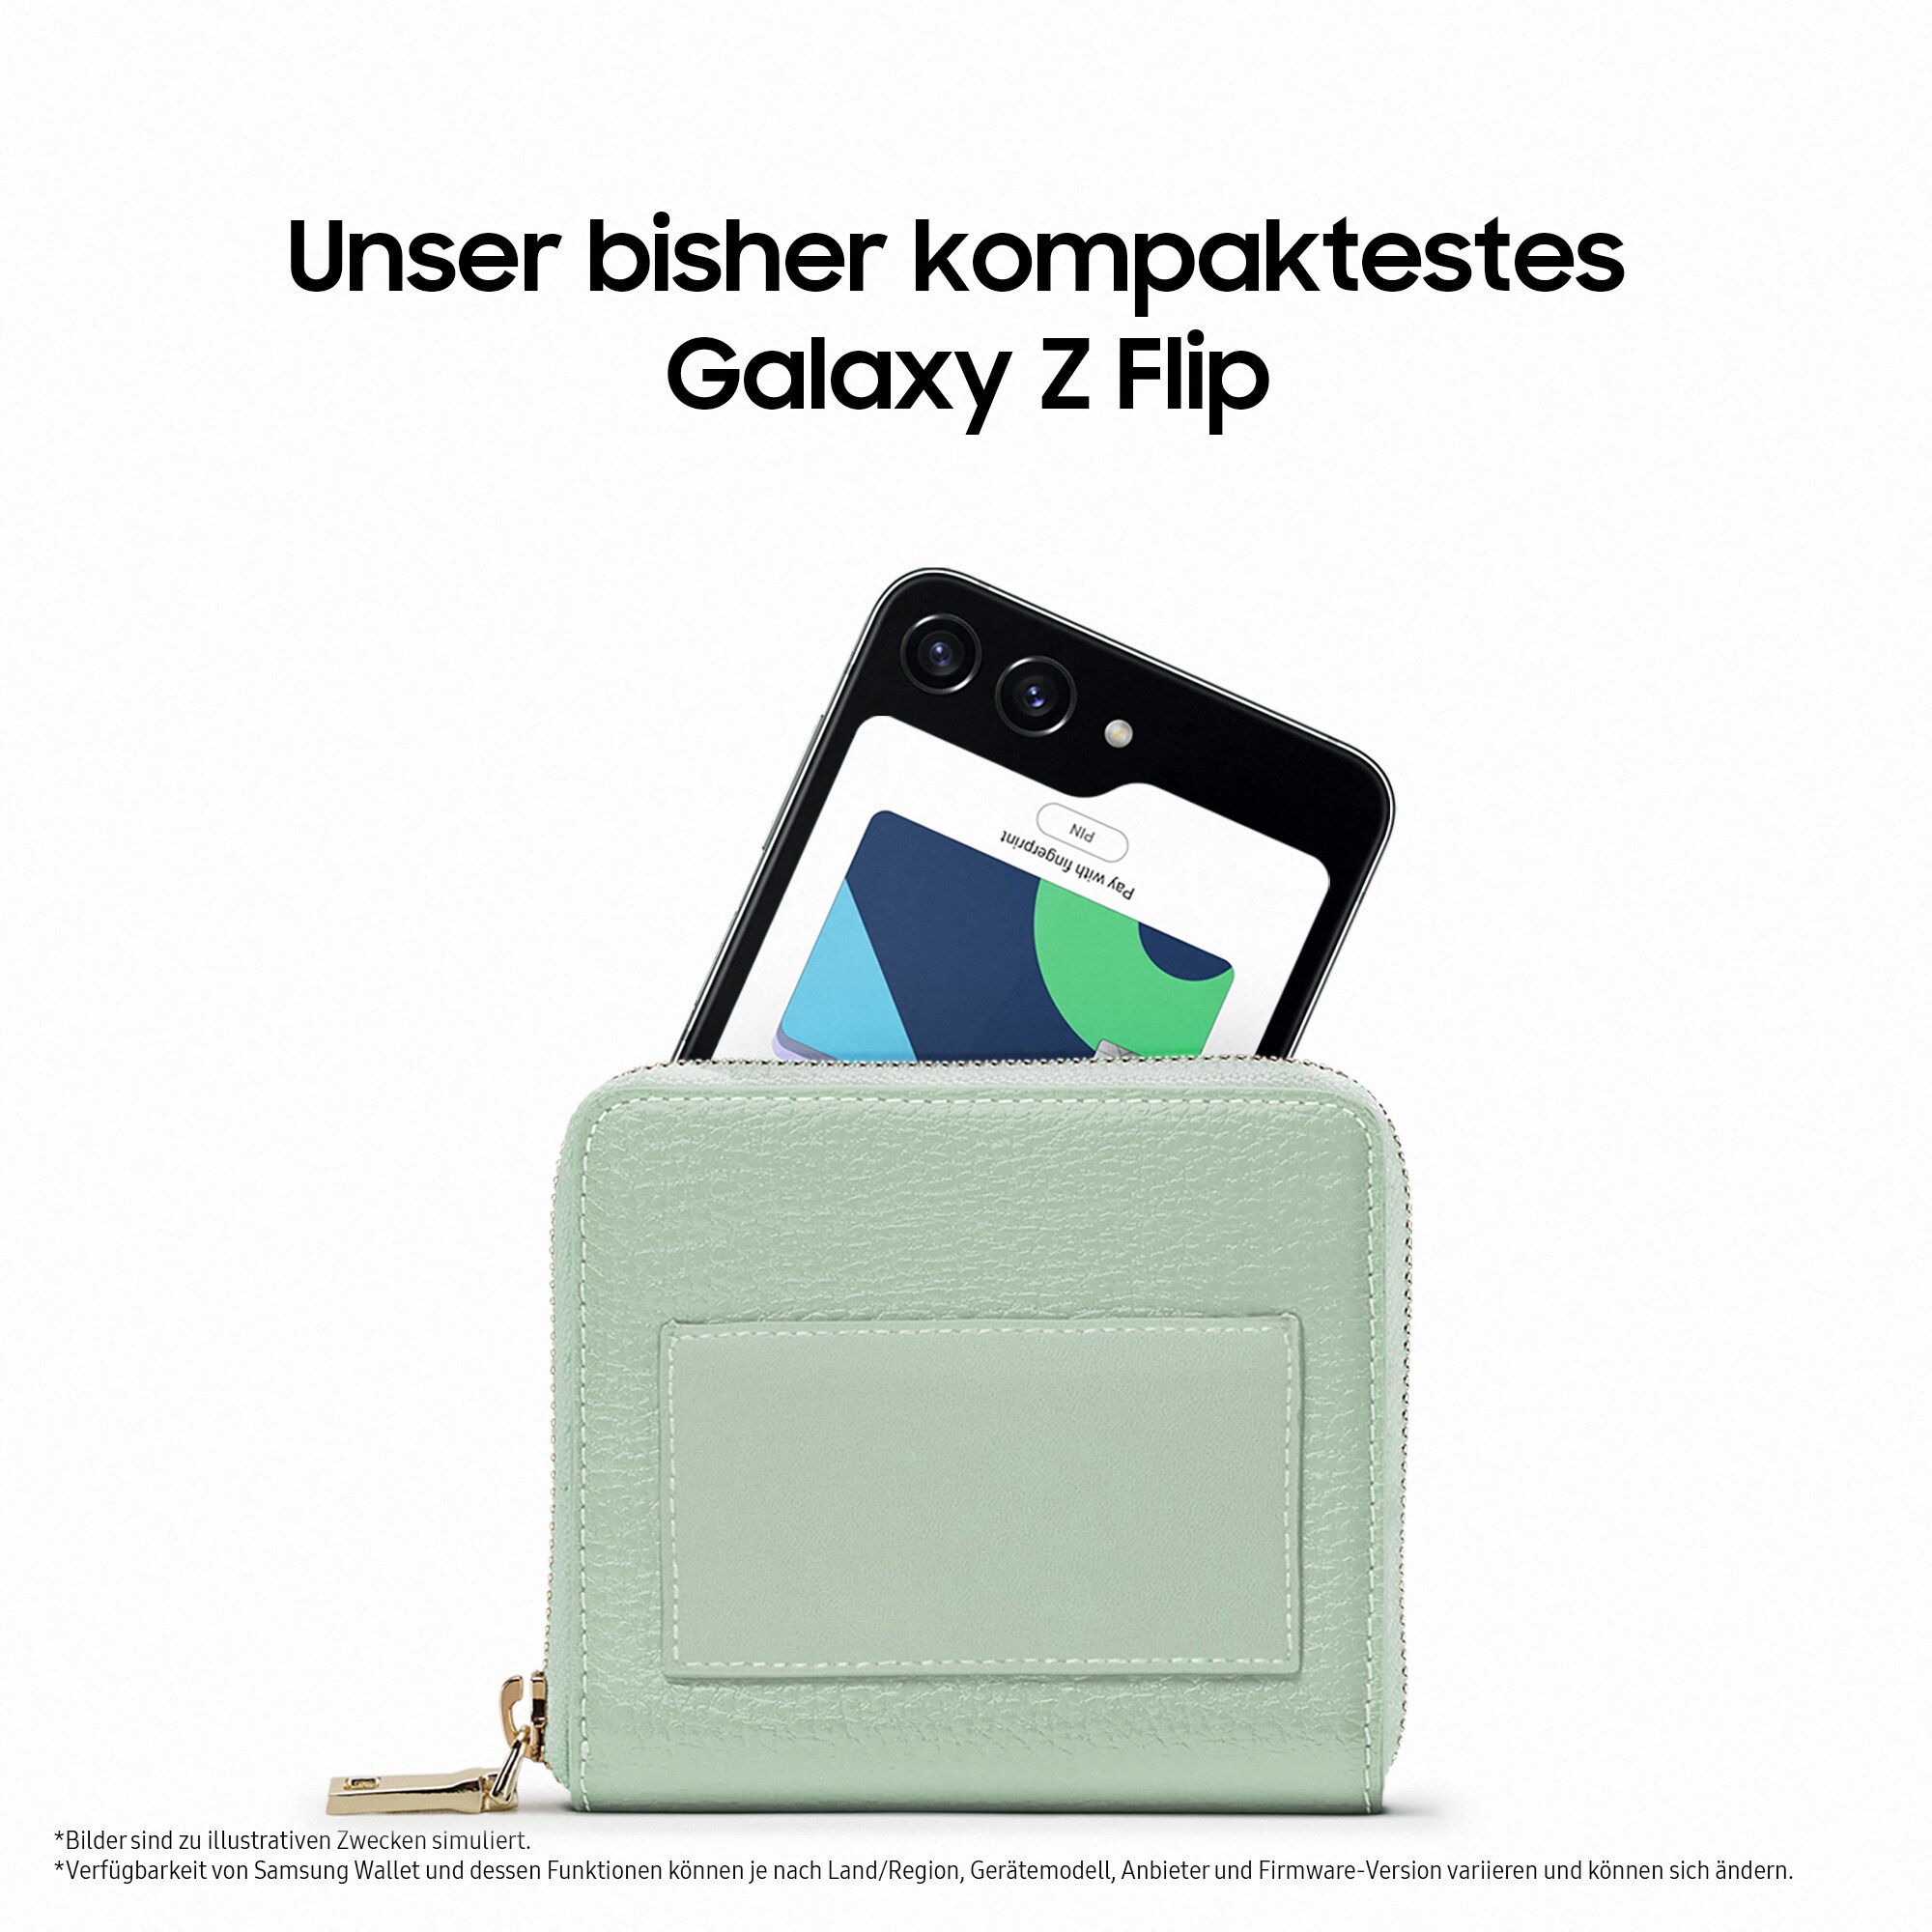 Samsung GALAXY Z mint 13.0 Flip5 Cyberport F731B Android Dual-SIM 256GB ++ 5G Smartphone